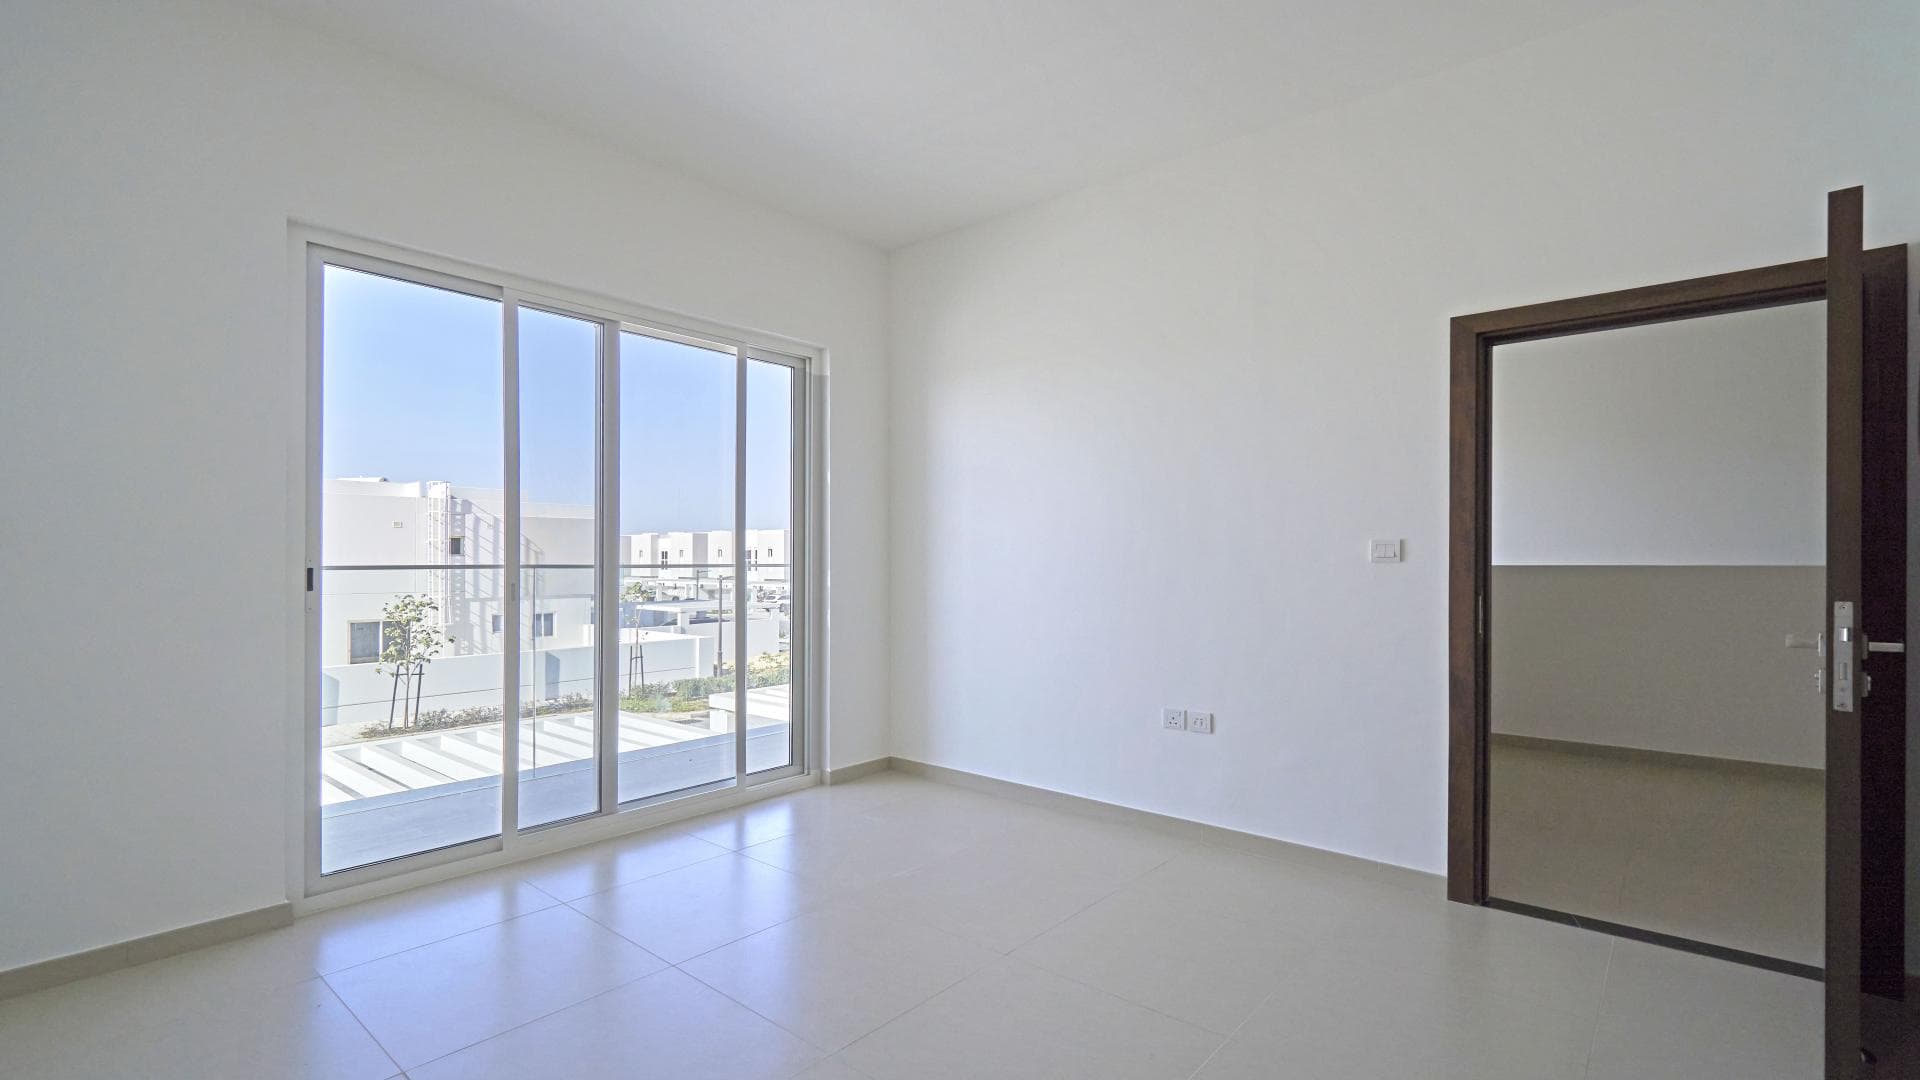 3 Bedroom Townhouse For Sale Al Kazim Tower 1 Lp36877 2d8666e921458800.jpg